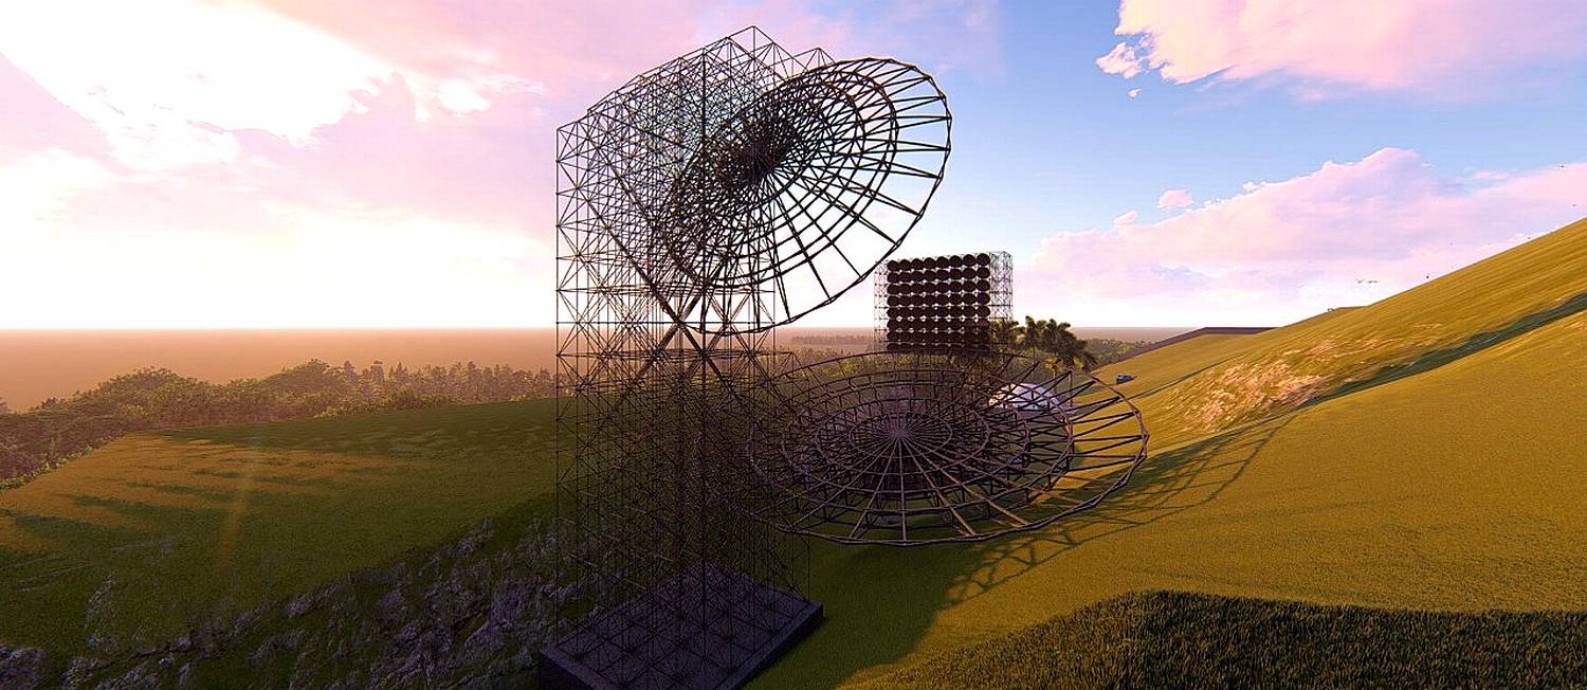 Modelo digital do rádiotelescópio BINGO, com "espelhos" de 38m e 45m de diâmetro e torre com antenas ao fundo. Foto: IF-USP/Divulgação